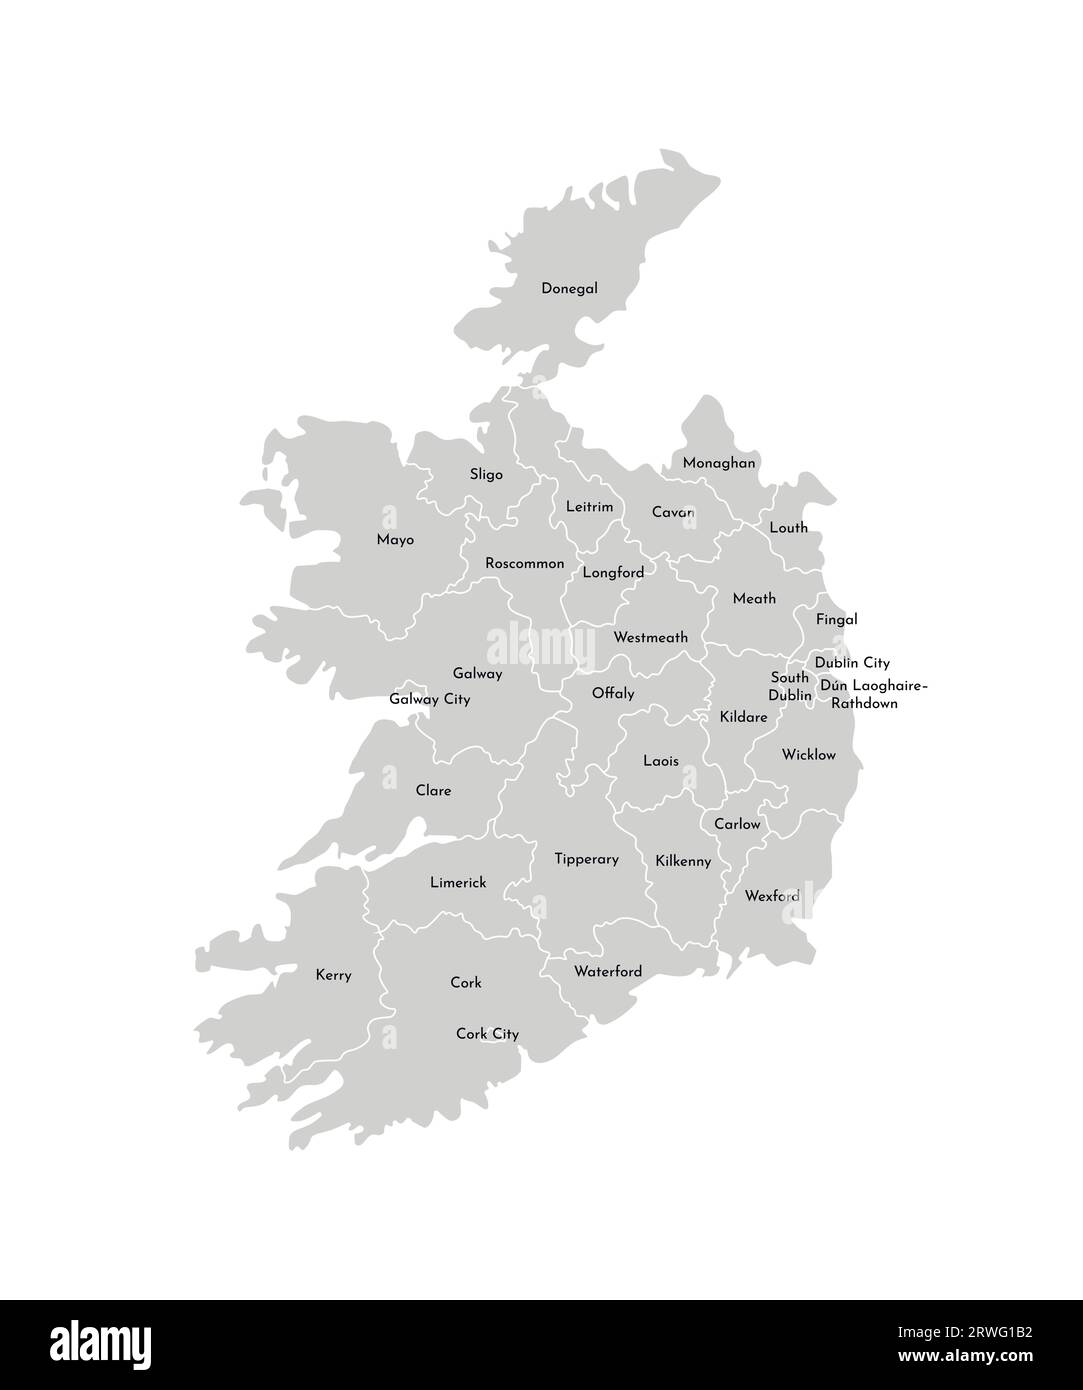 Vektorisolierte Illustration einer vereinfachten Verwaltungskarte der Republik Irland. Grenzen und Namen der Provinzen (Regionen). Graue Silhouetten. Stock Vektor